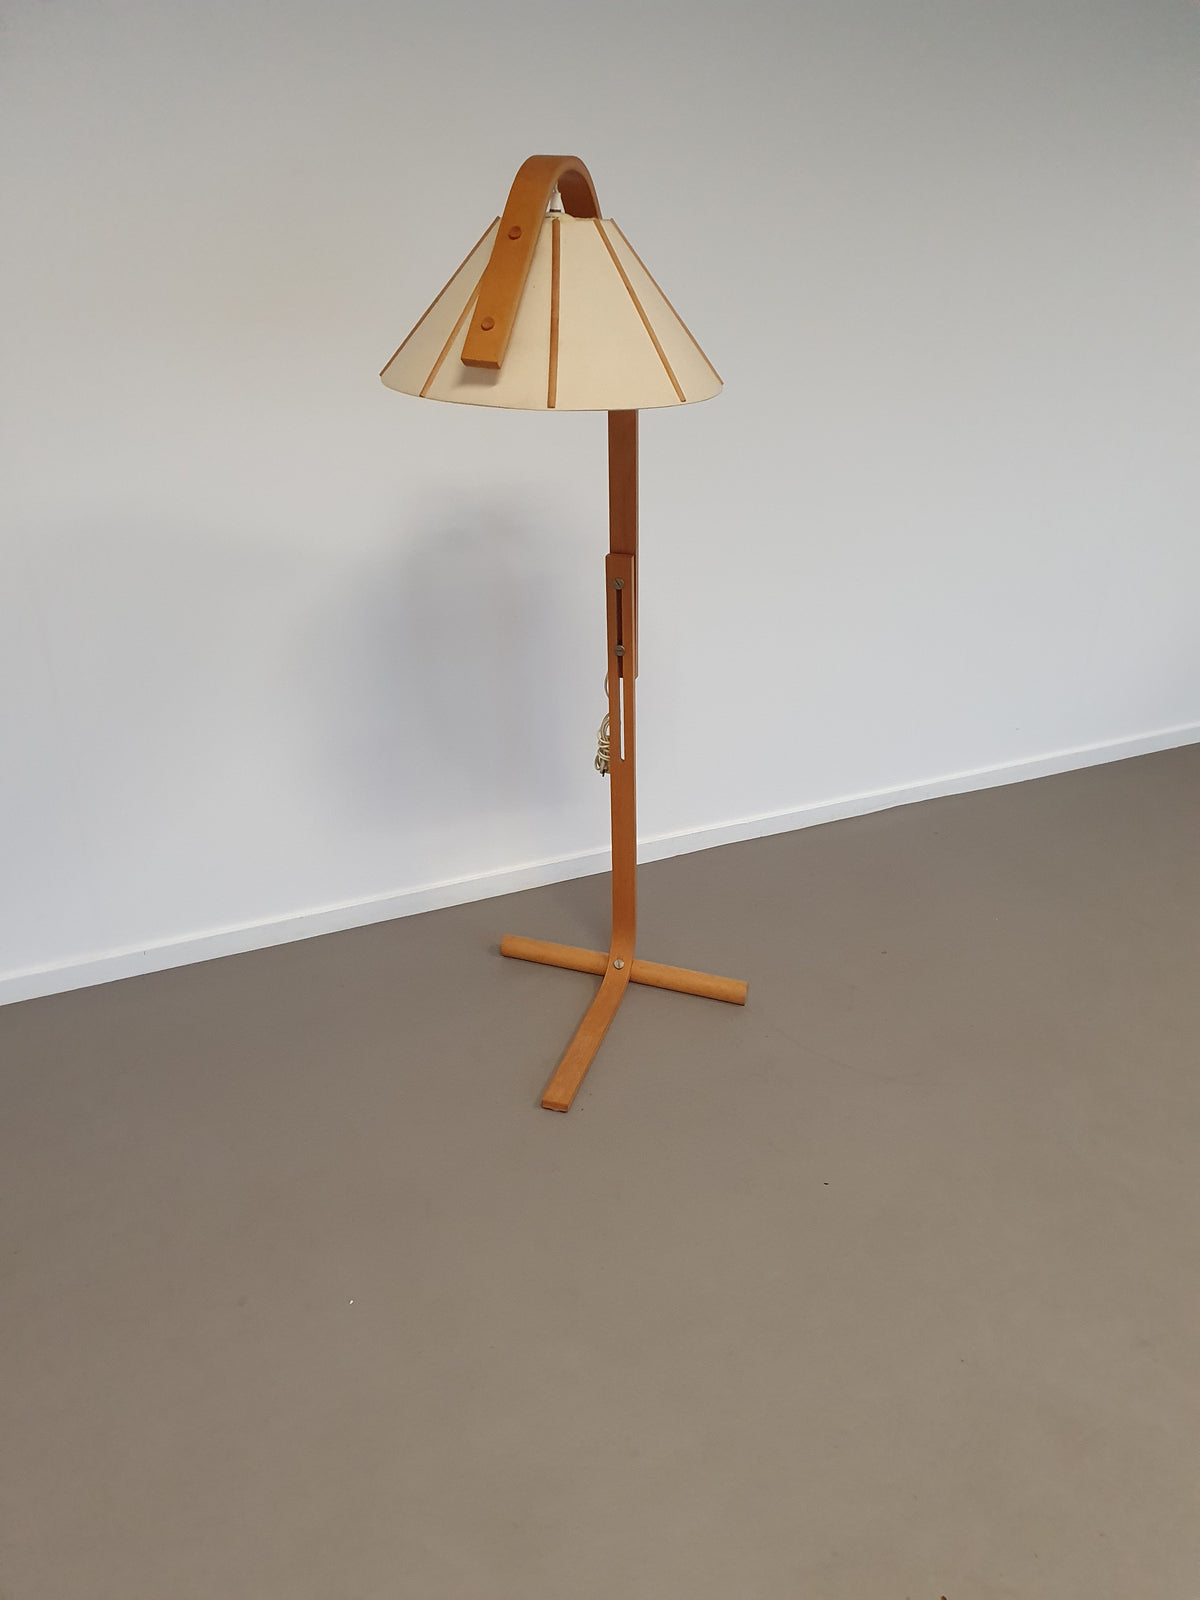 FLOOR LAMP BY JAN WICKELGREN FOR ANETA SWEDEN, 1970S